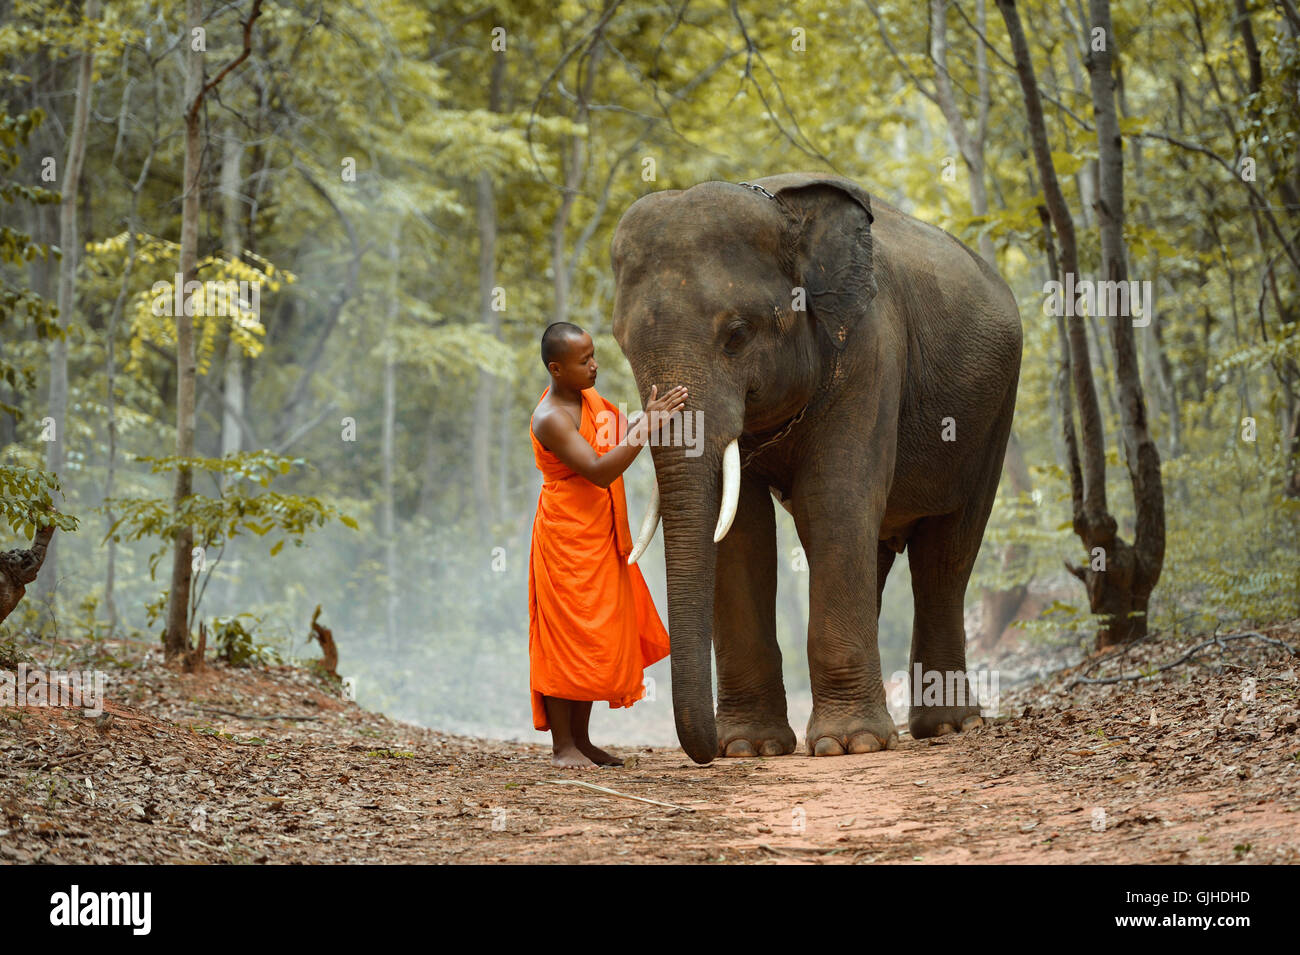 Monk standing in forest avec l'éléphant, Thaïlande Banque D'Images